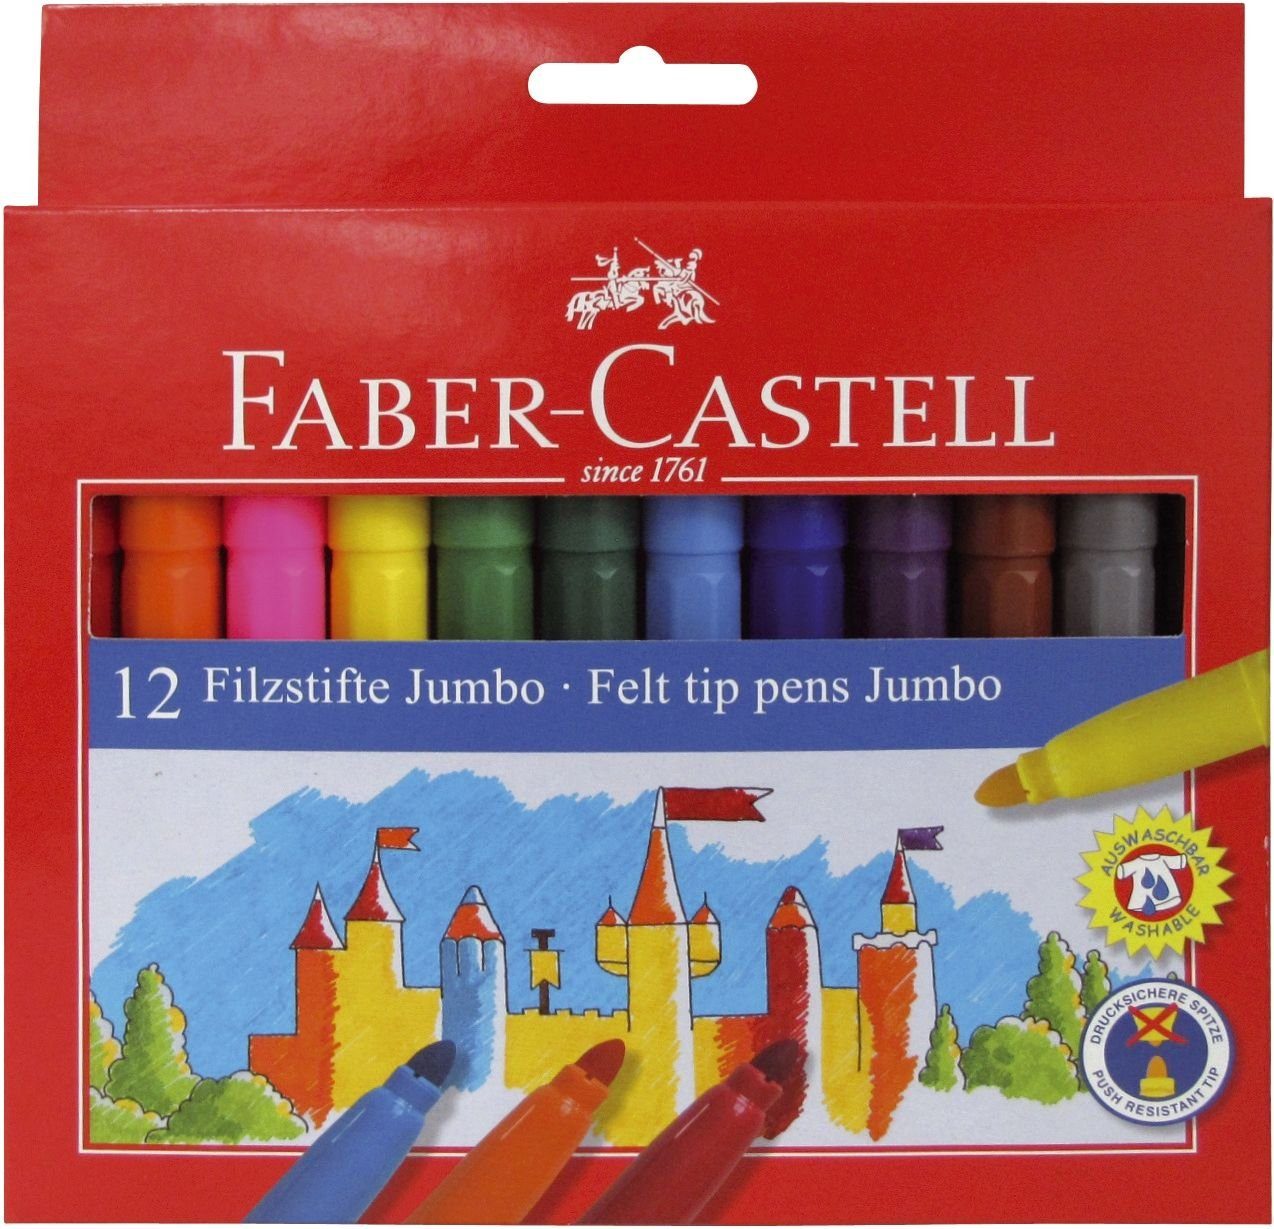 Faber-Castell Jumbo, Fasermaler Faserstift FABER-CASTELL 12er Kartonetui